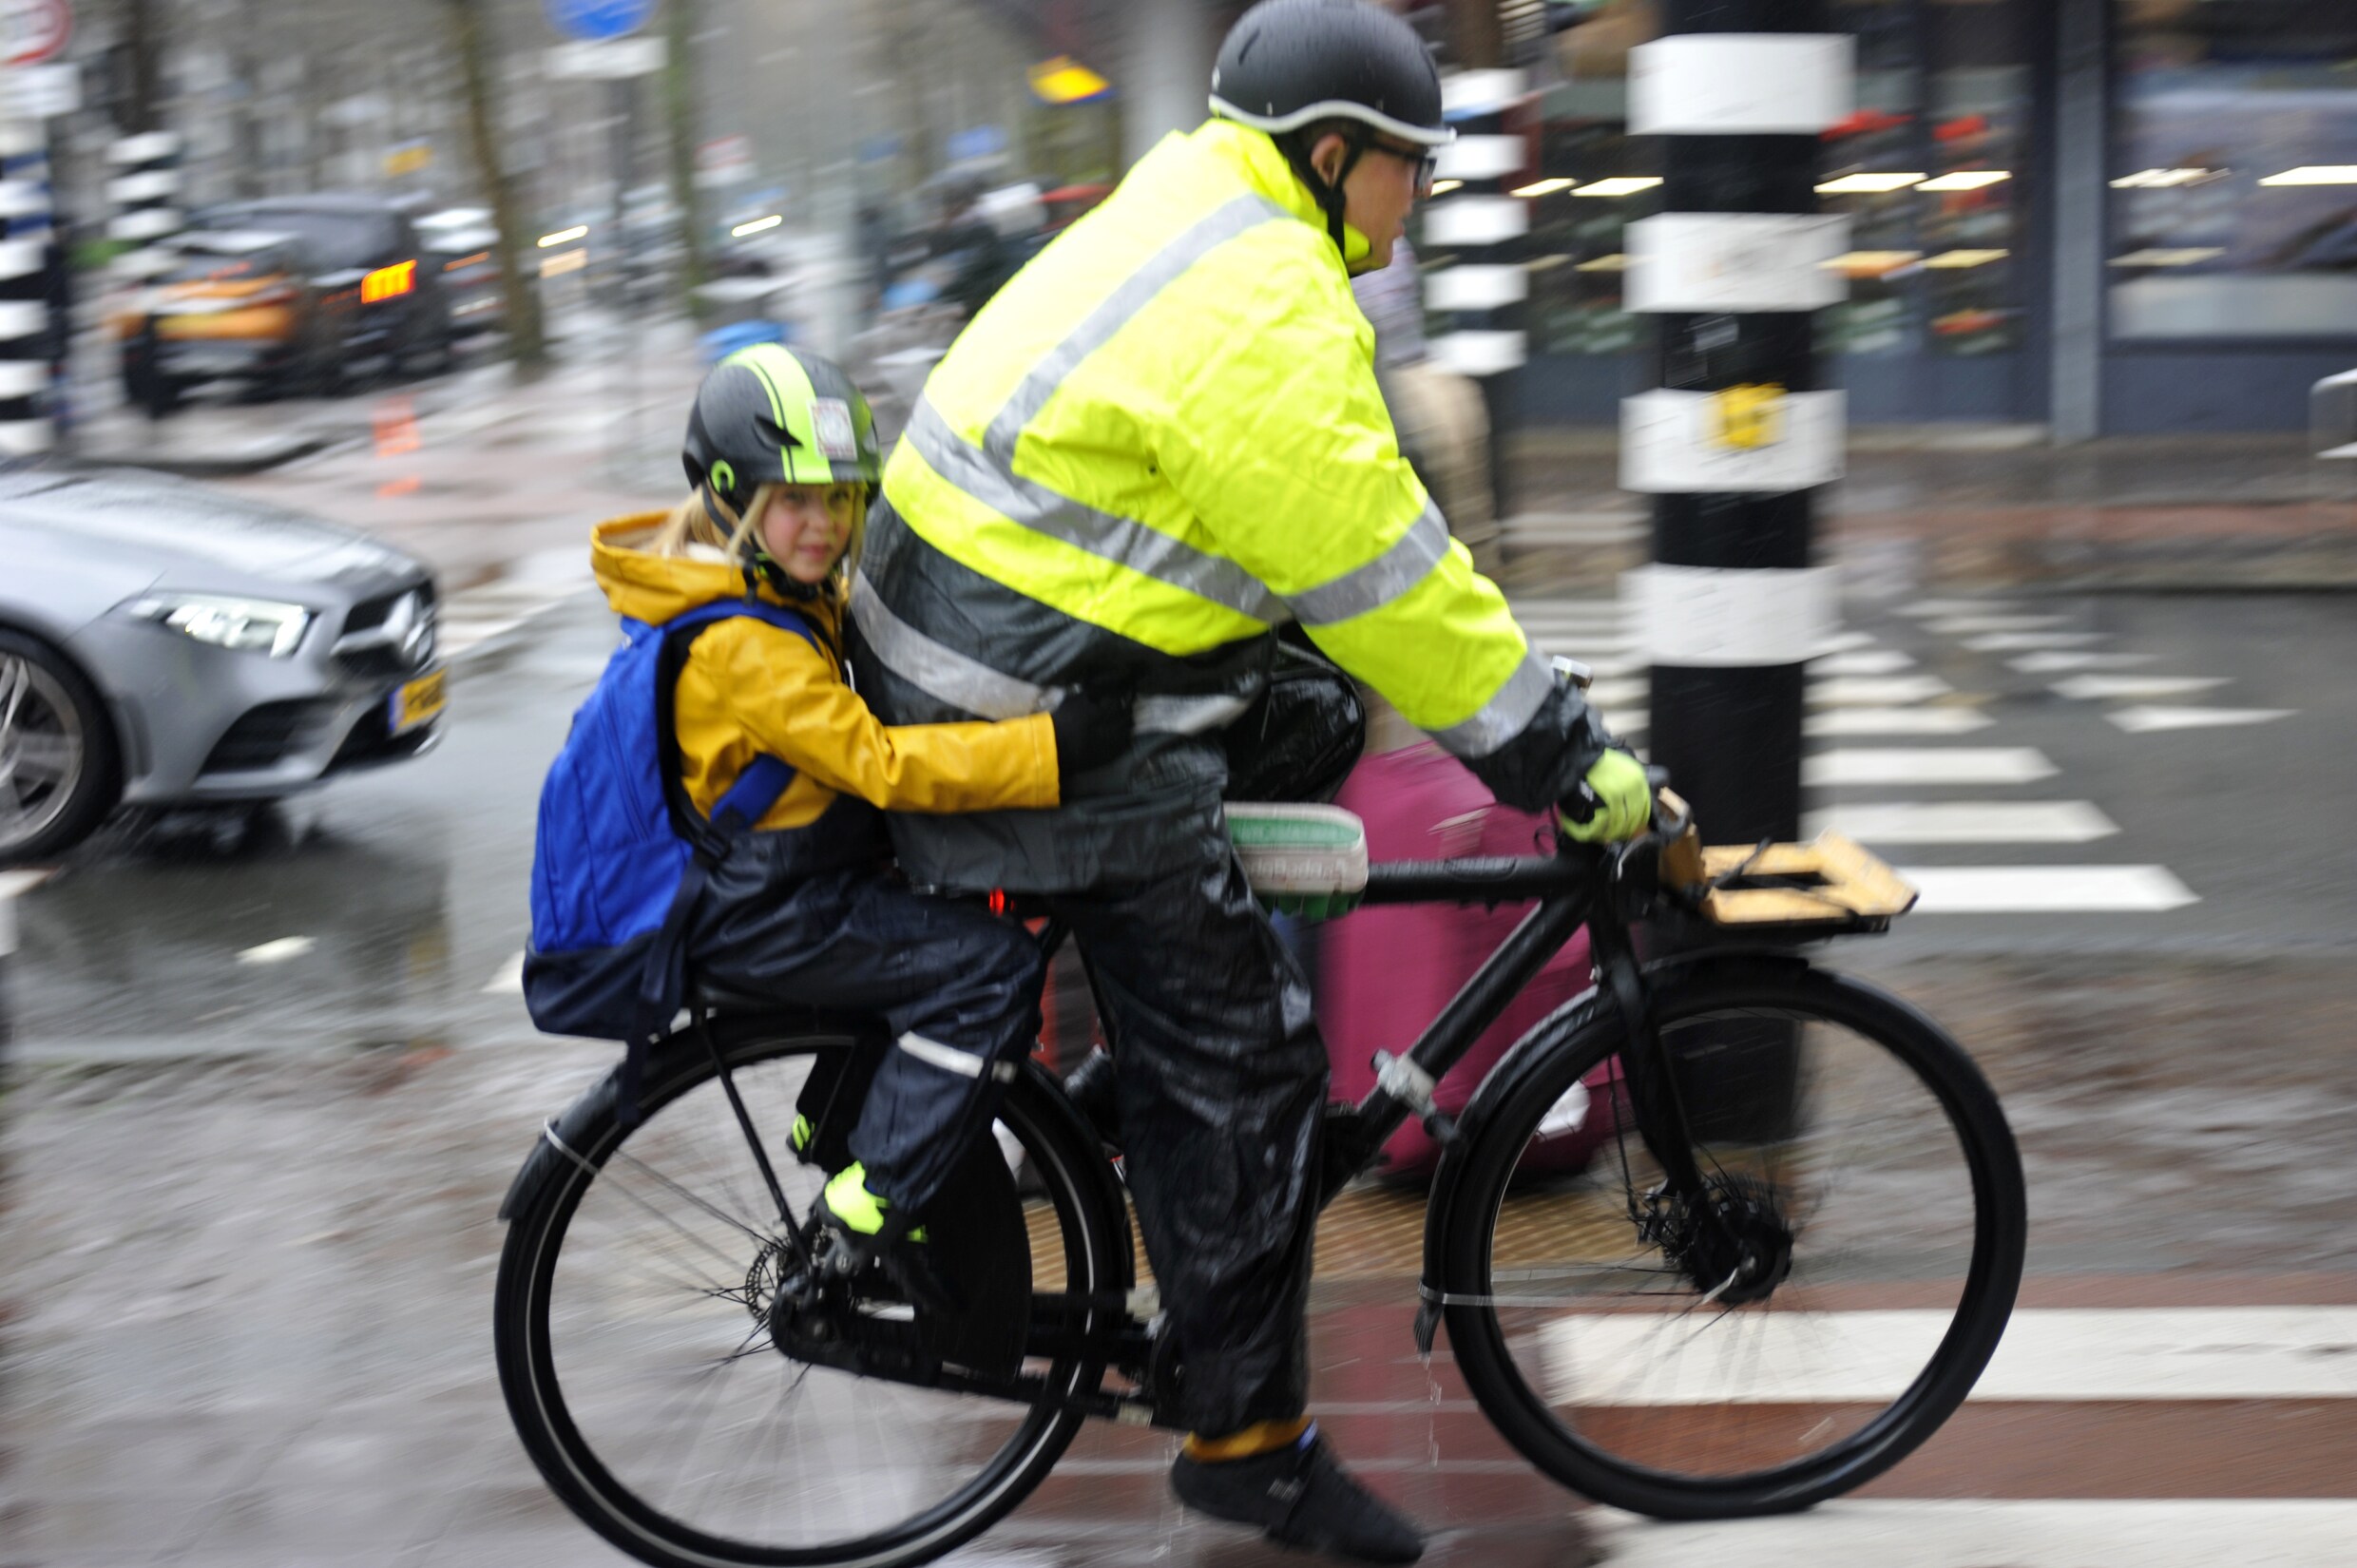 Opinie: ‘Een helmplicht voor fietsers komt enkel de autolobby ten goede’